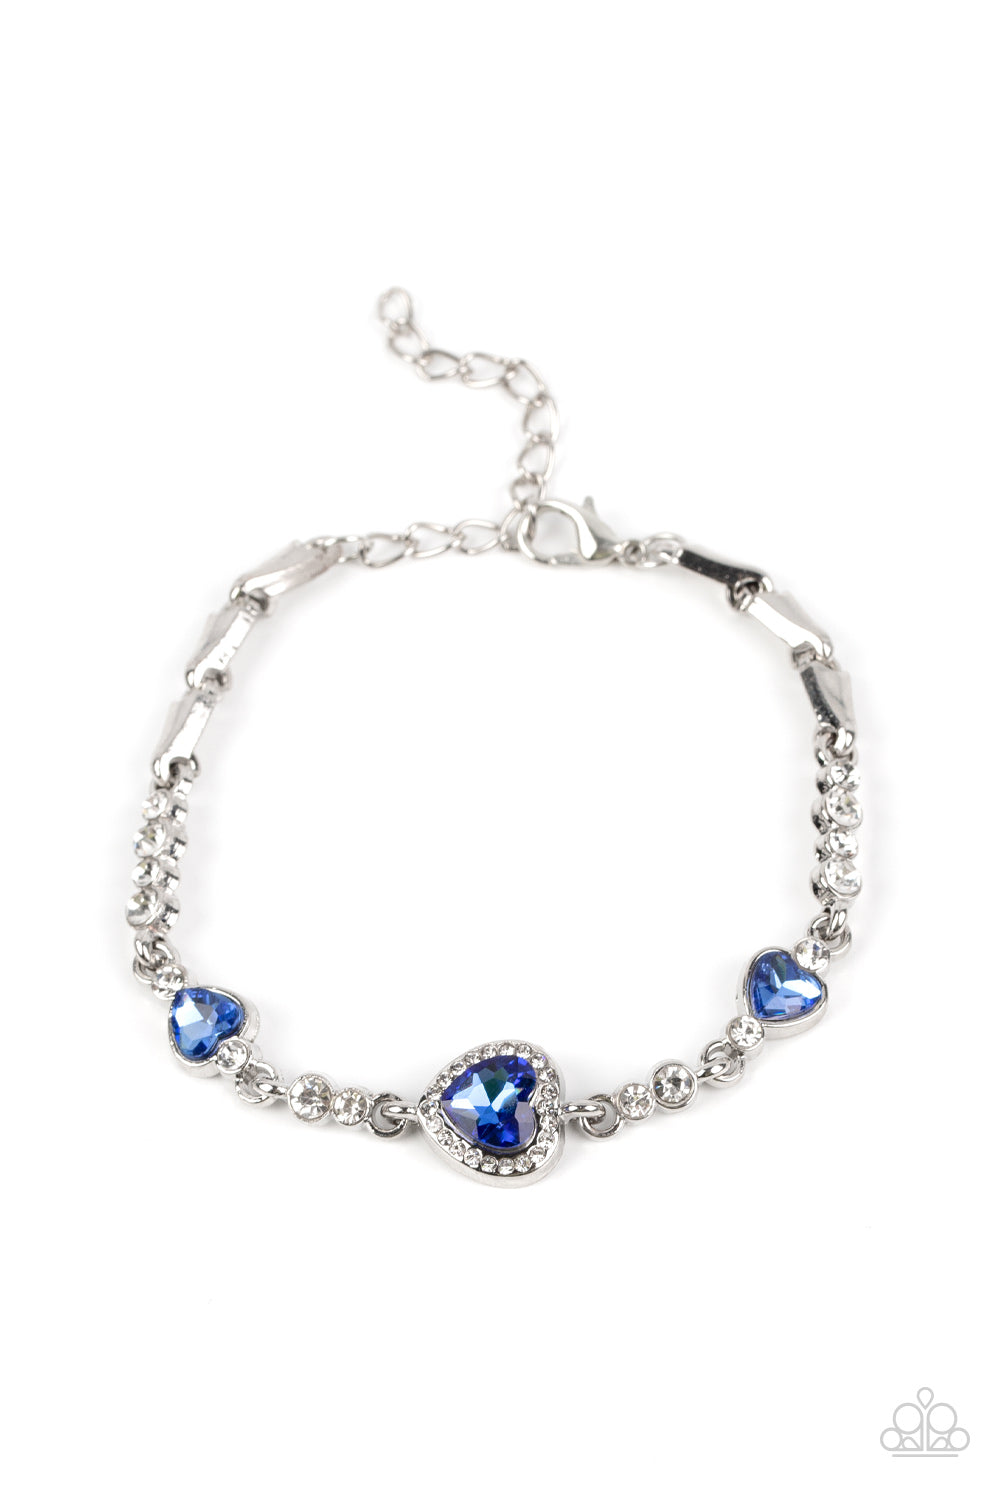 Paparazzi “Amor Actually” Blue Adjustable Clasp Bracelet - Cindysblingboutique